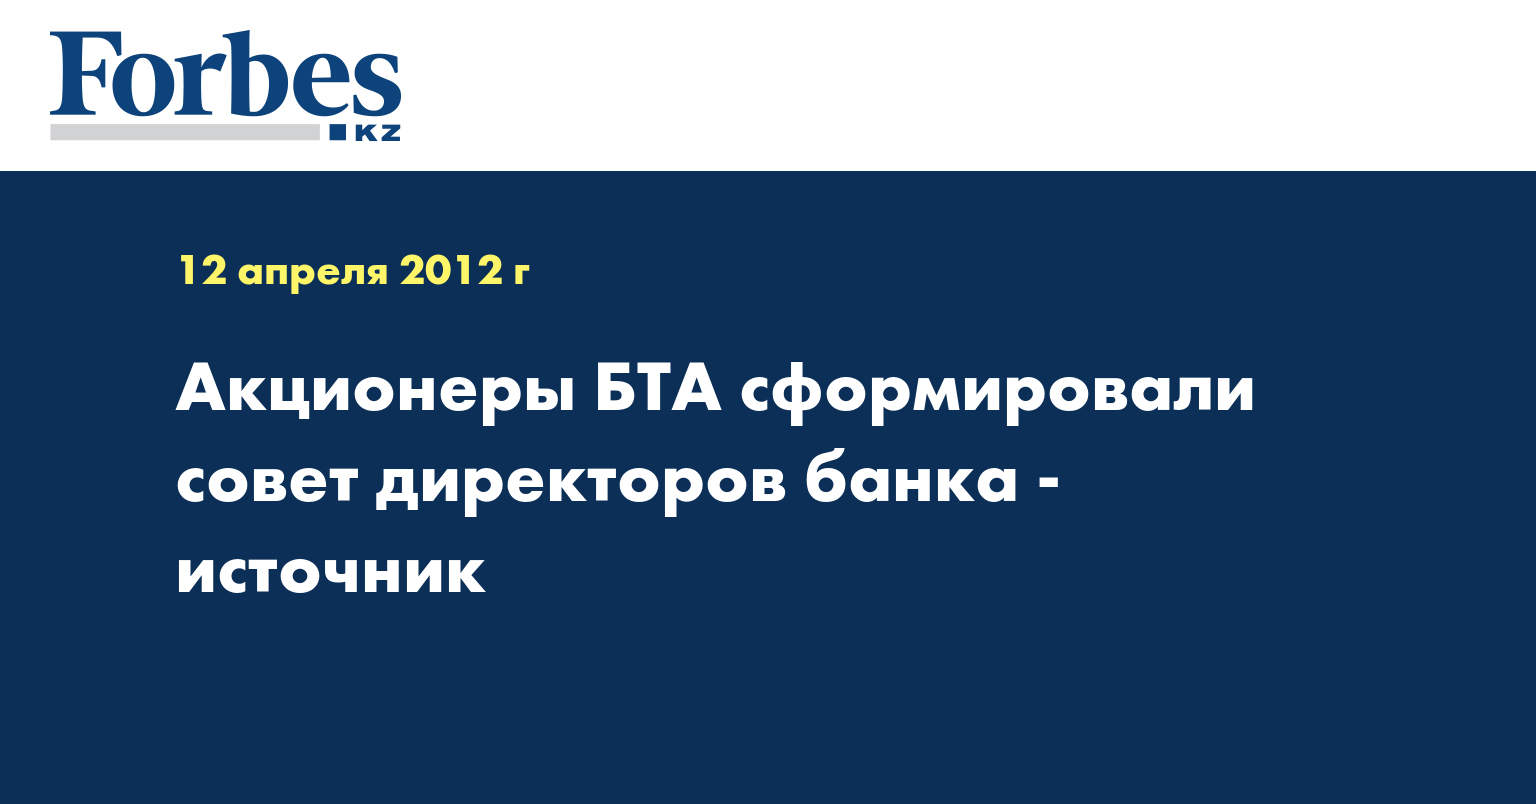 Акционеры БТА сформировали совет директоров банка - источник